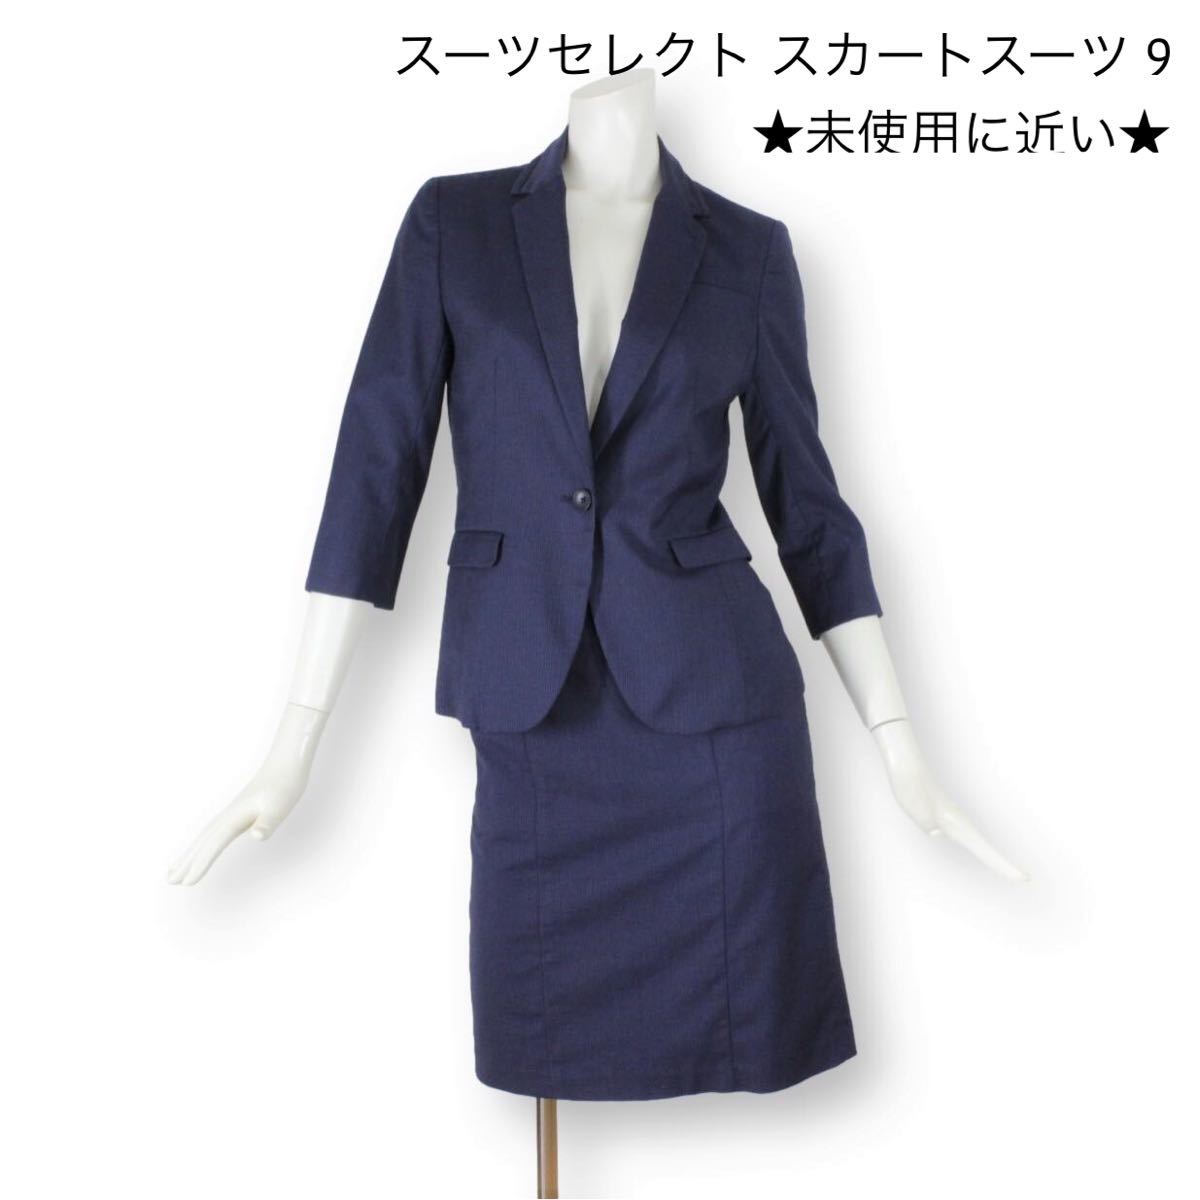 SUIT SELECT スーツセレクト スカートスーツ ネイビー 濃紺-